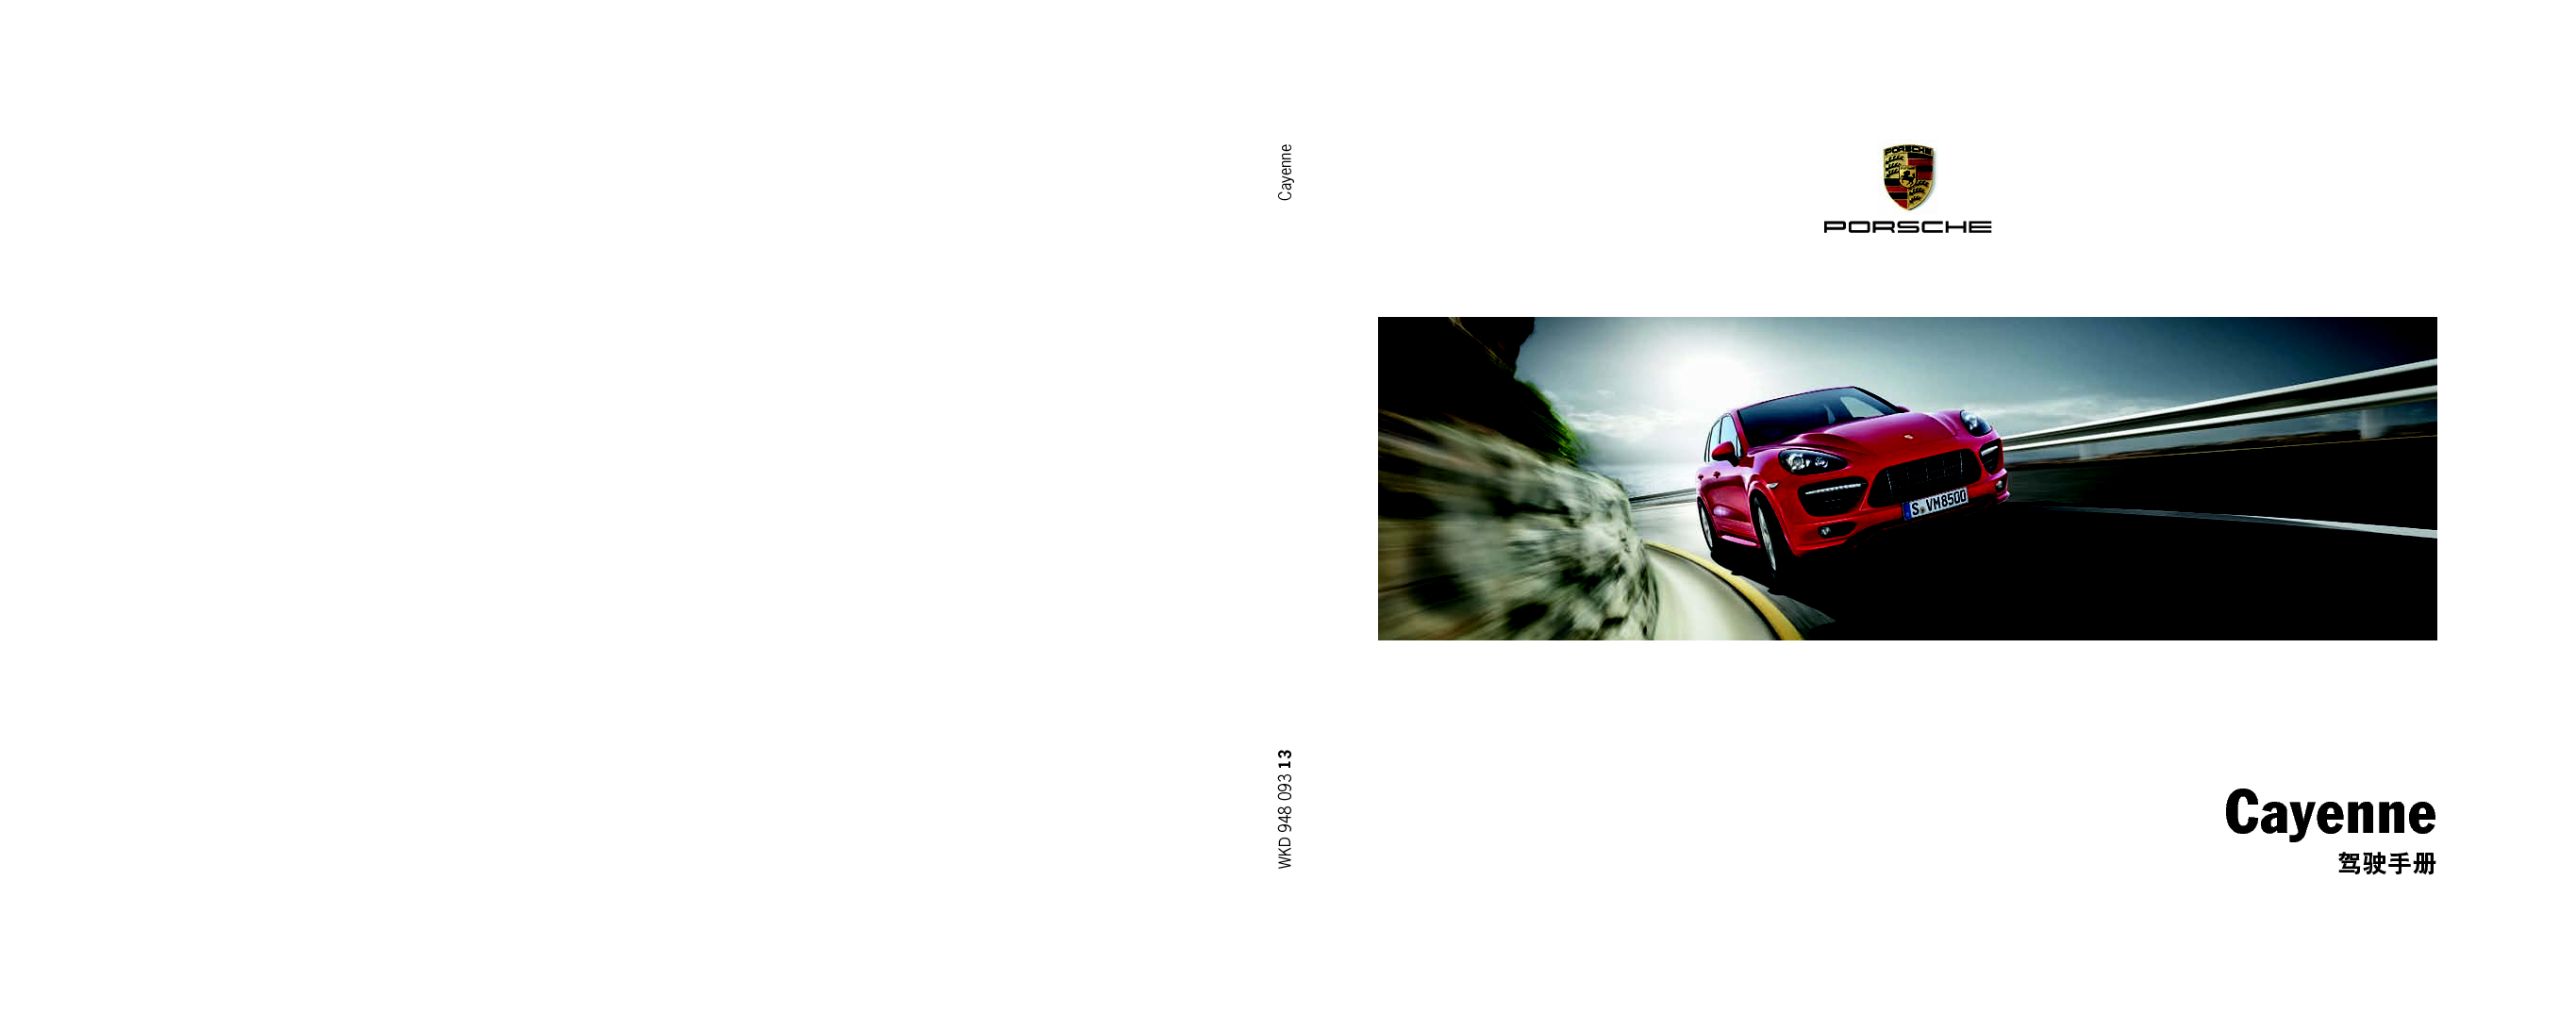 保时捷 Porsche Cayenne 07/2012 使用说明书 封面